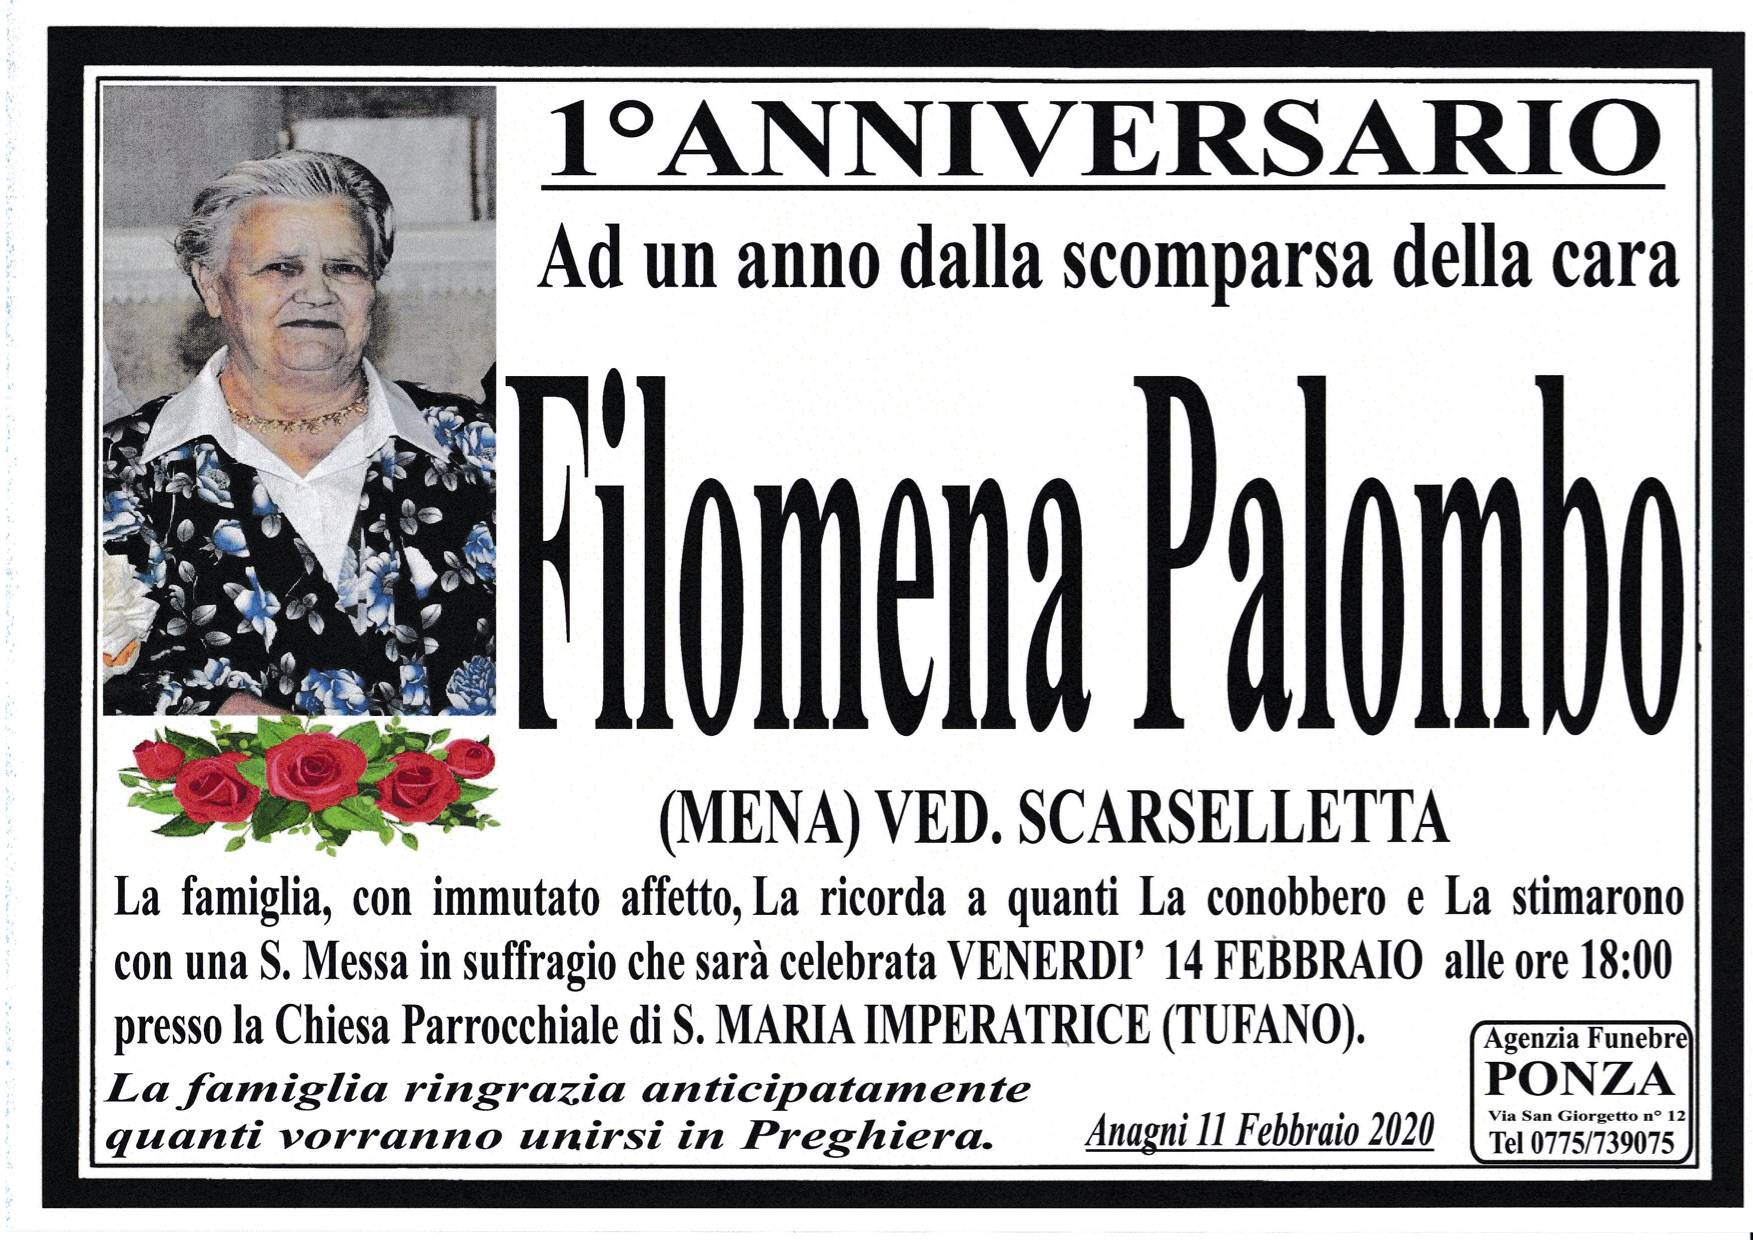 Filomena Palombo